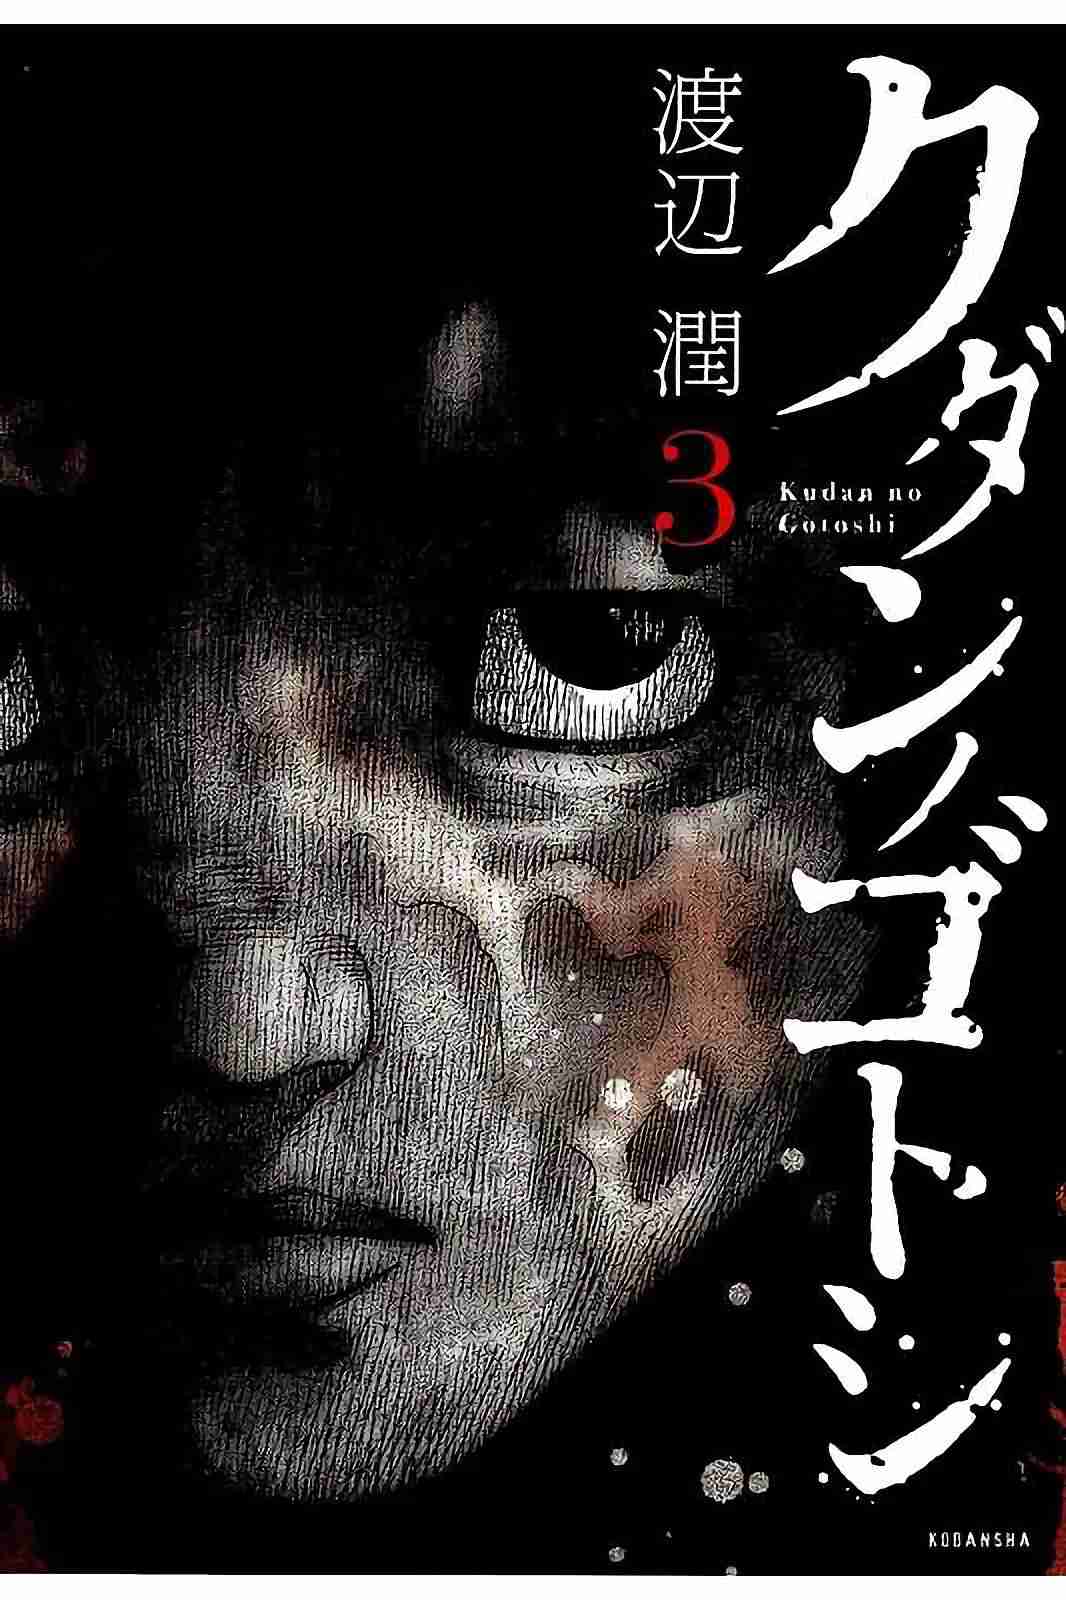 Kudan no Gotoshi Vol. 3 Ch. 20 Mai Kawai < Part 1 > Shinji Fujisawa < Part 5 >